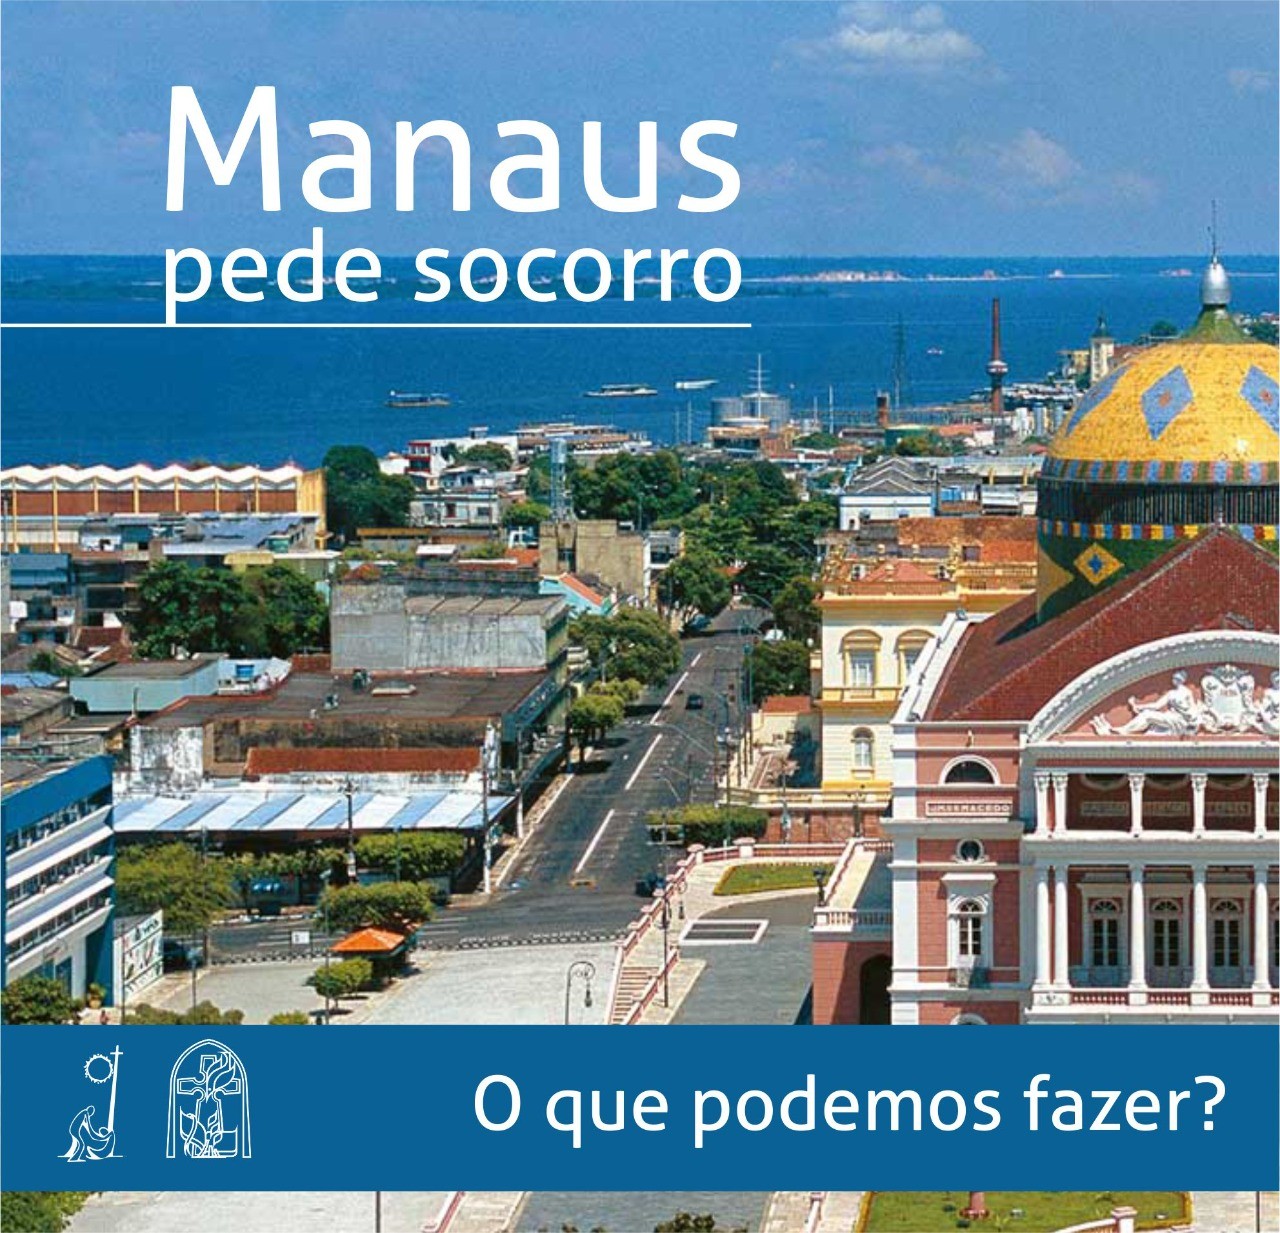 03.2021 - Manaus pede socorro